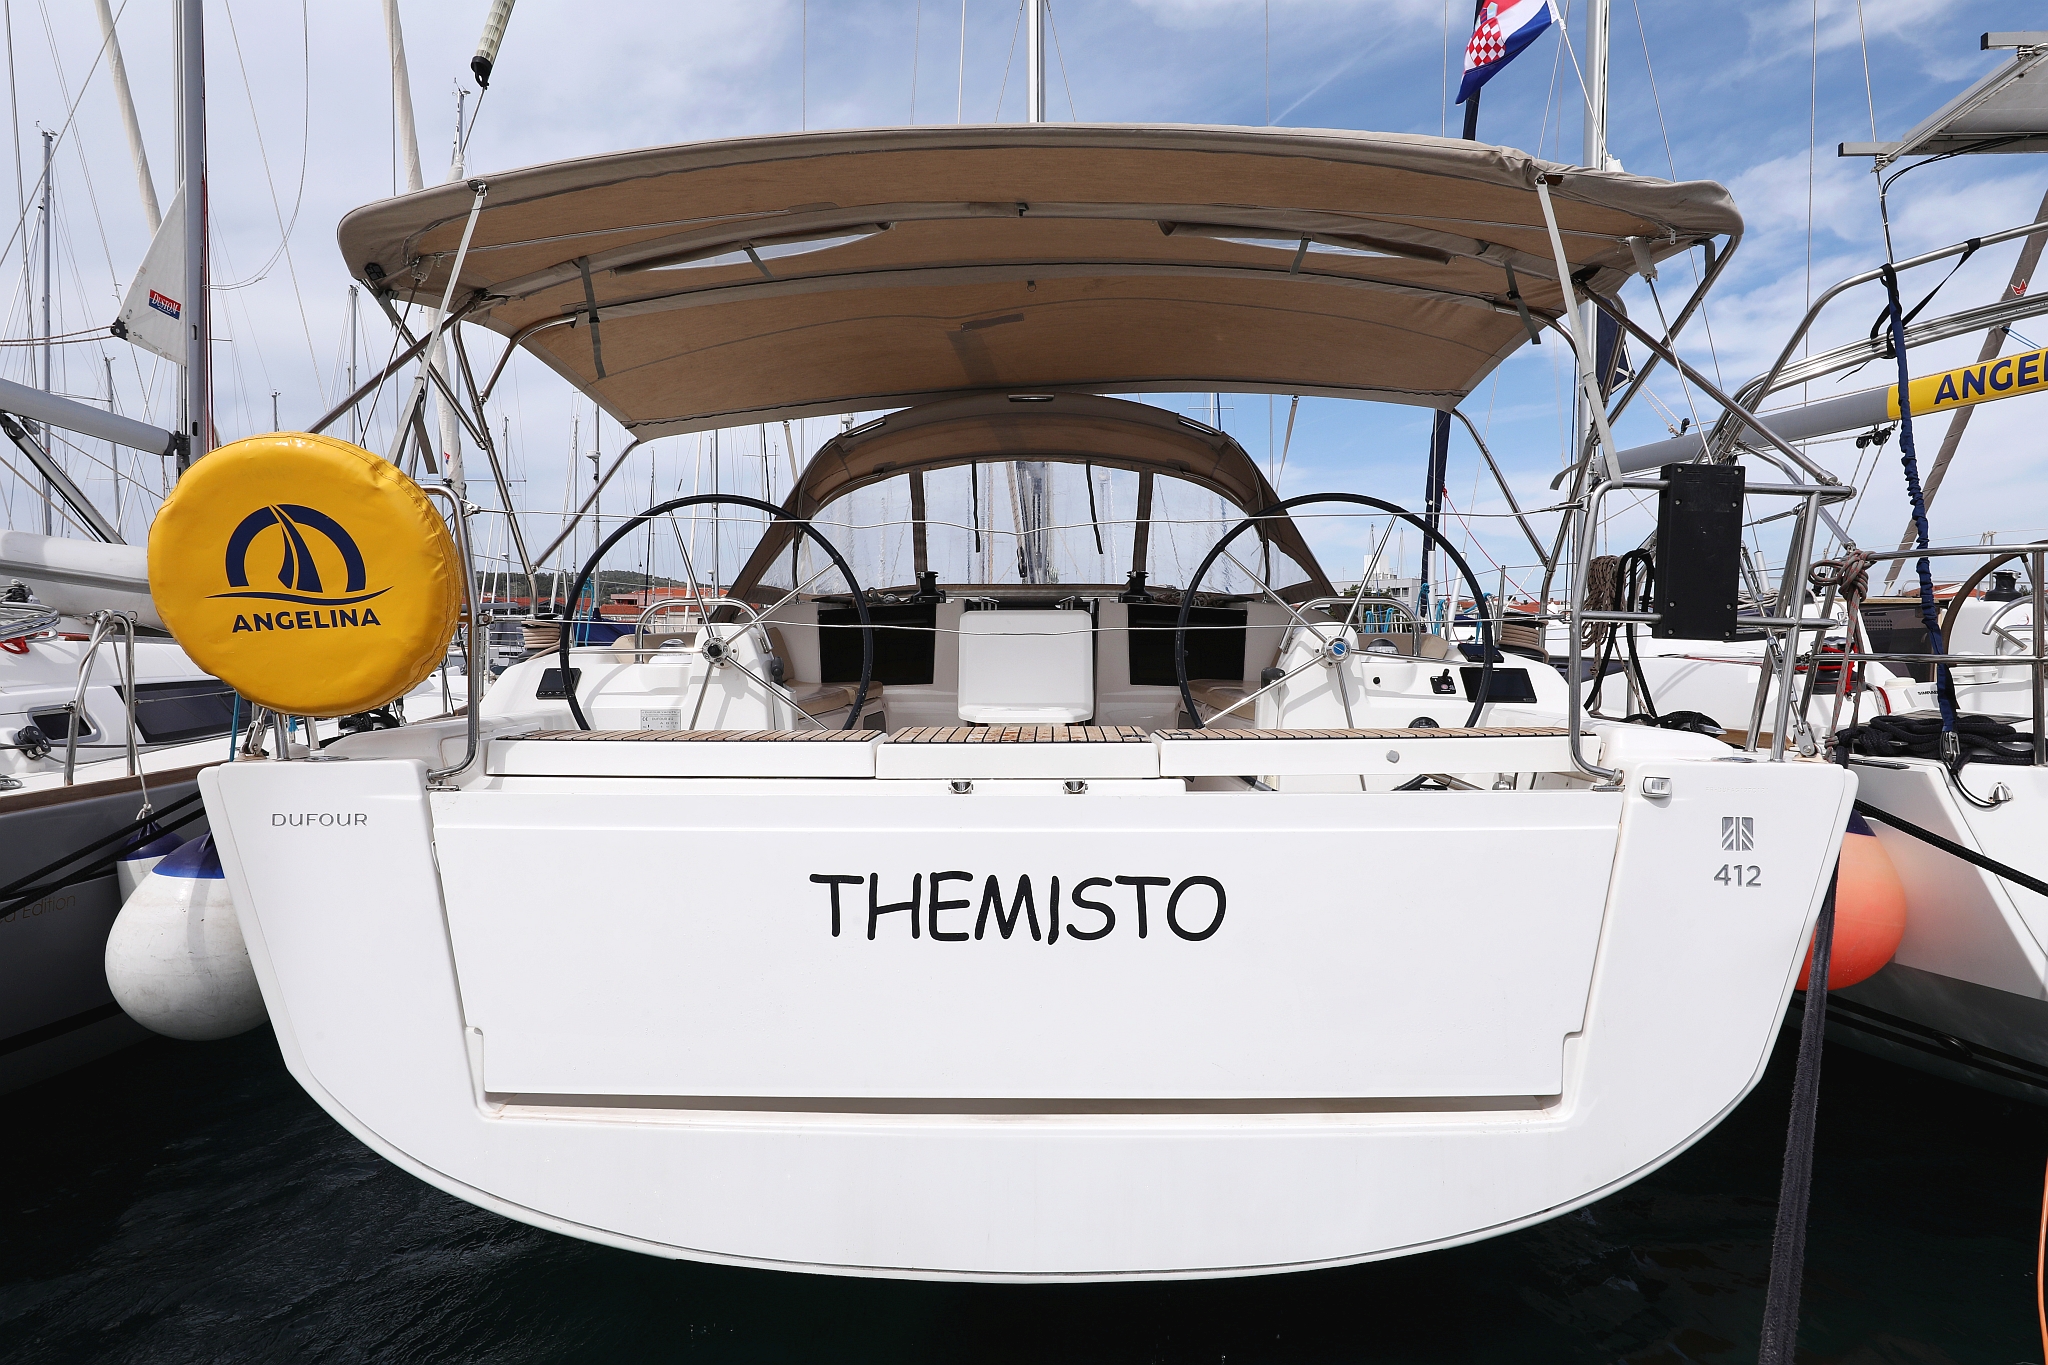 Themisto